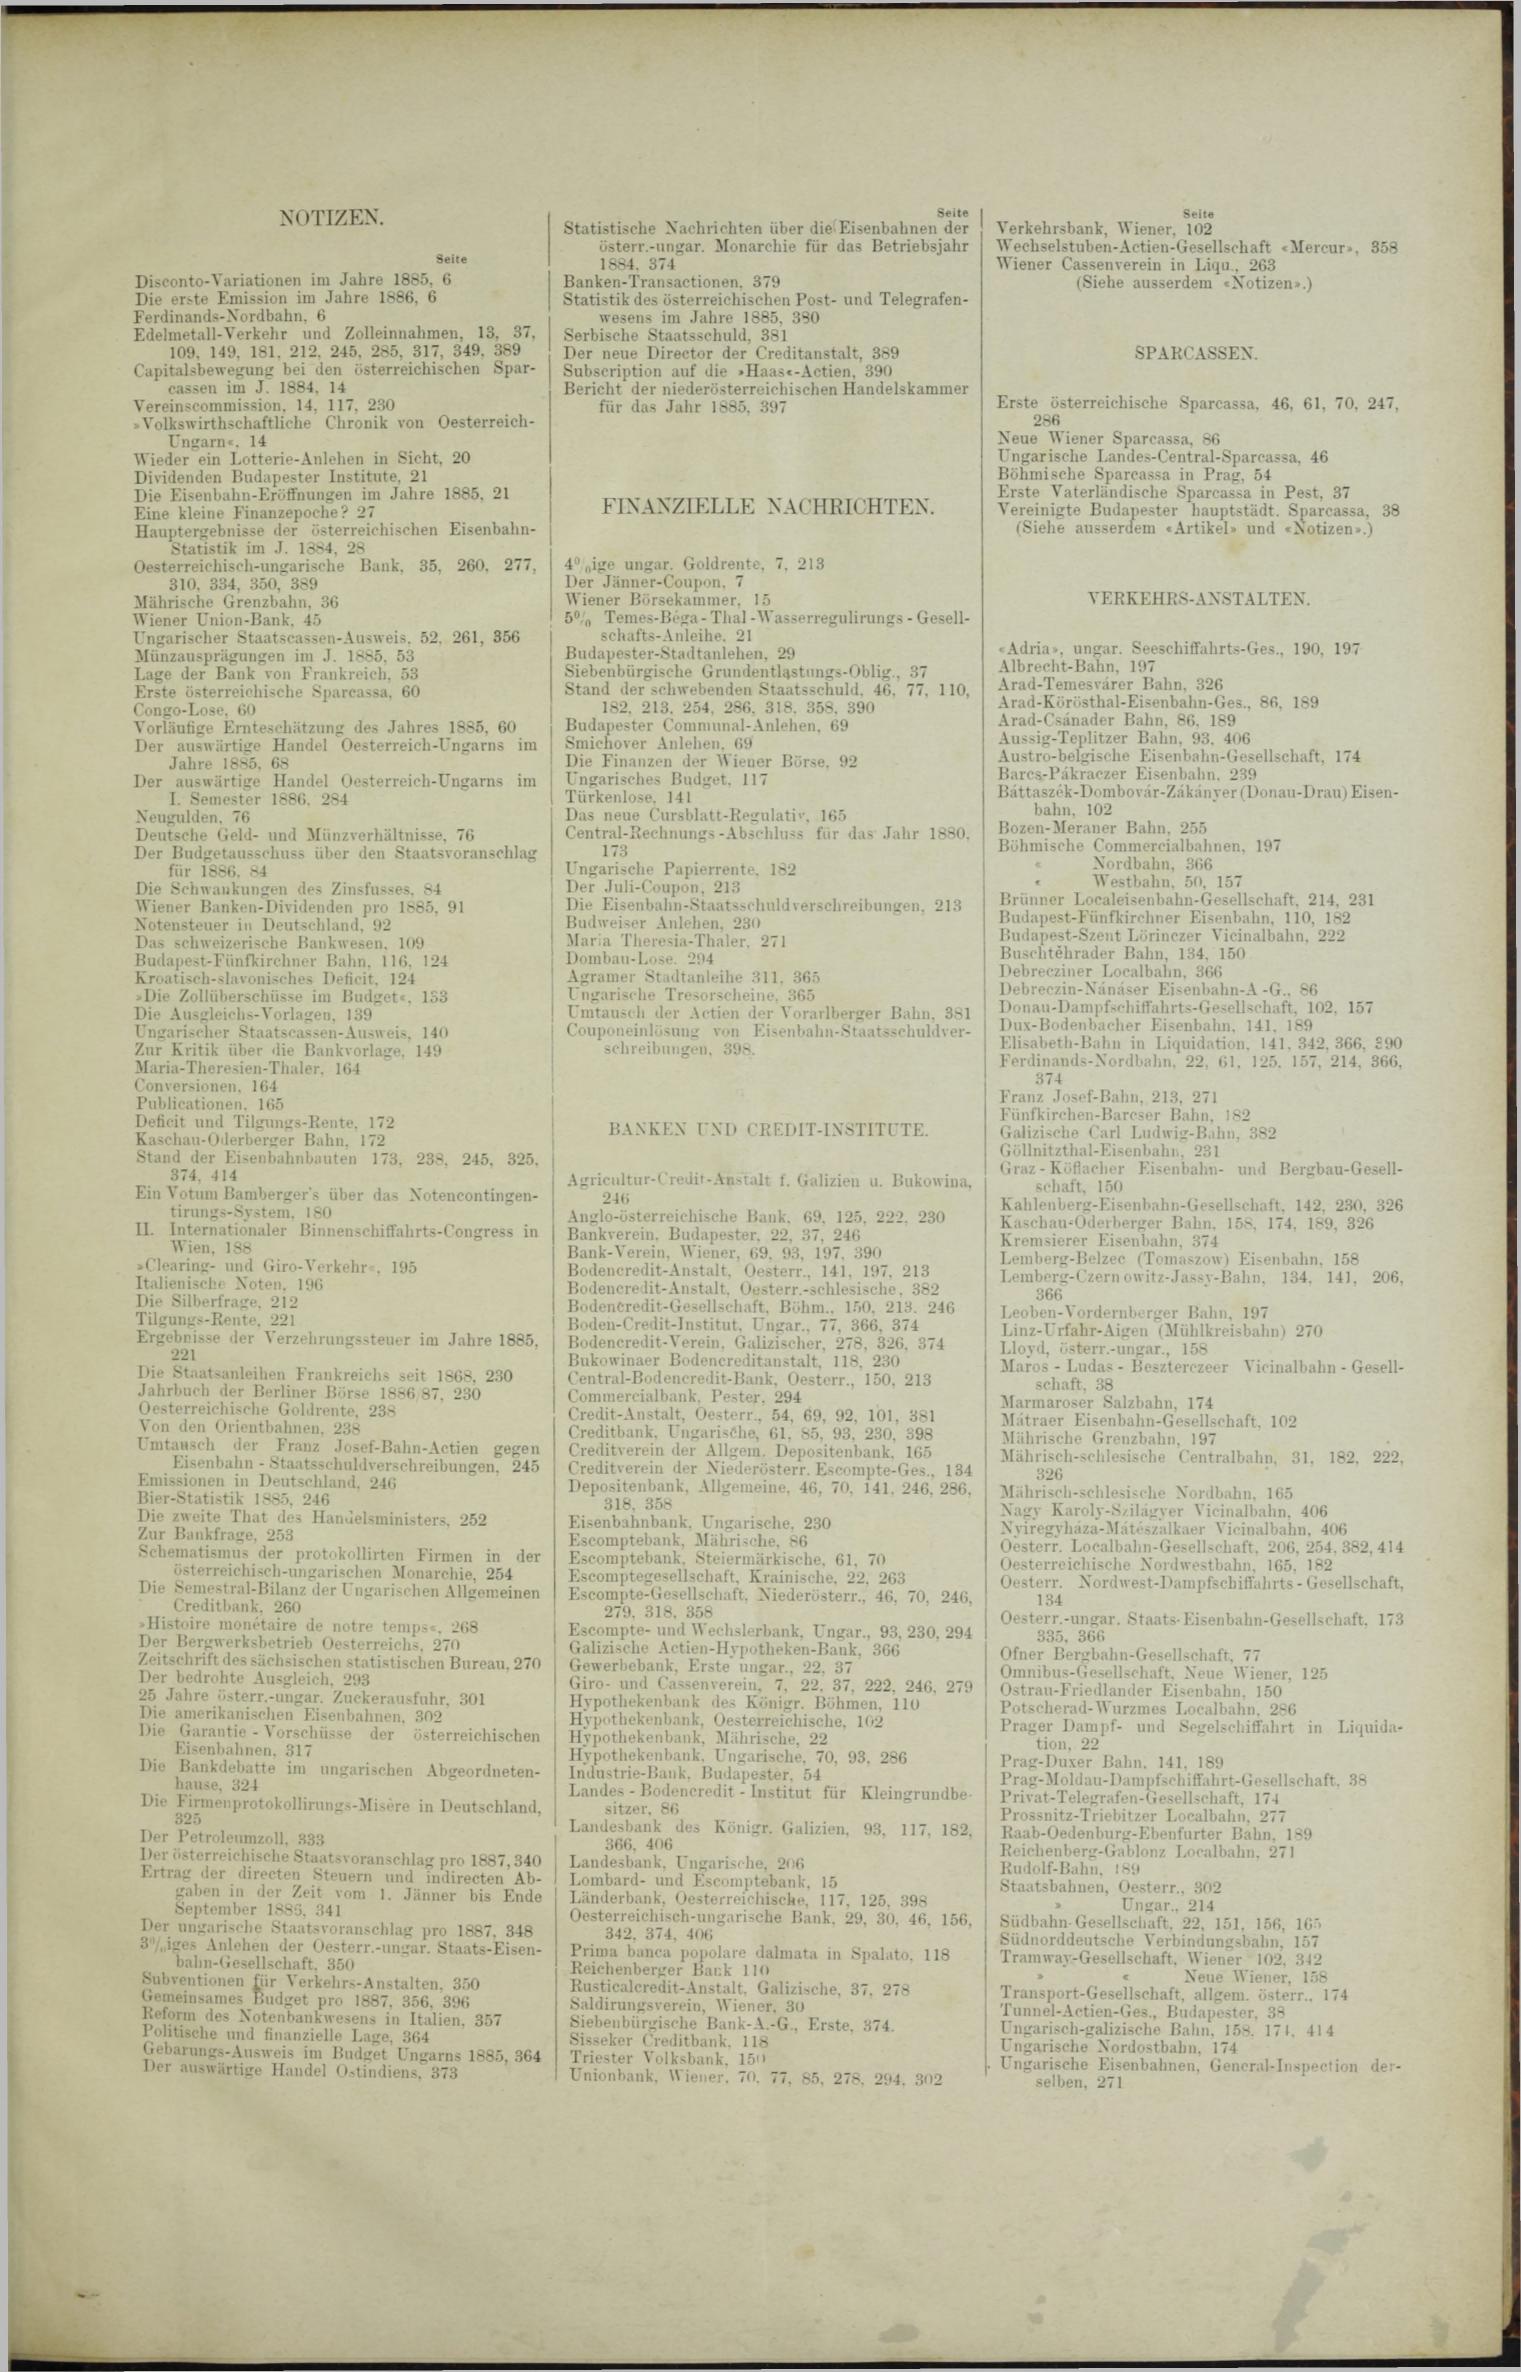 Der Tresor 13.05.1886 - Seite 11